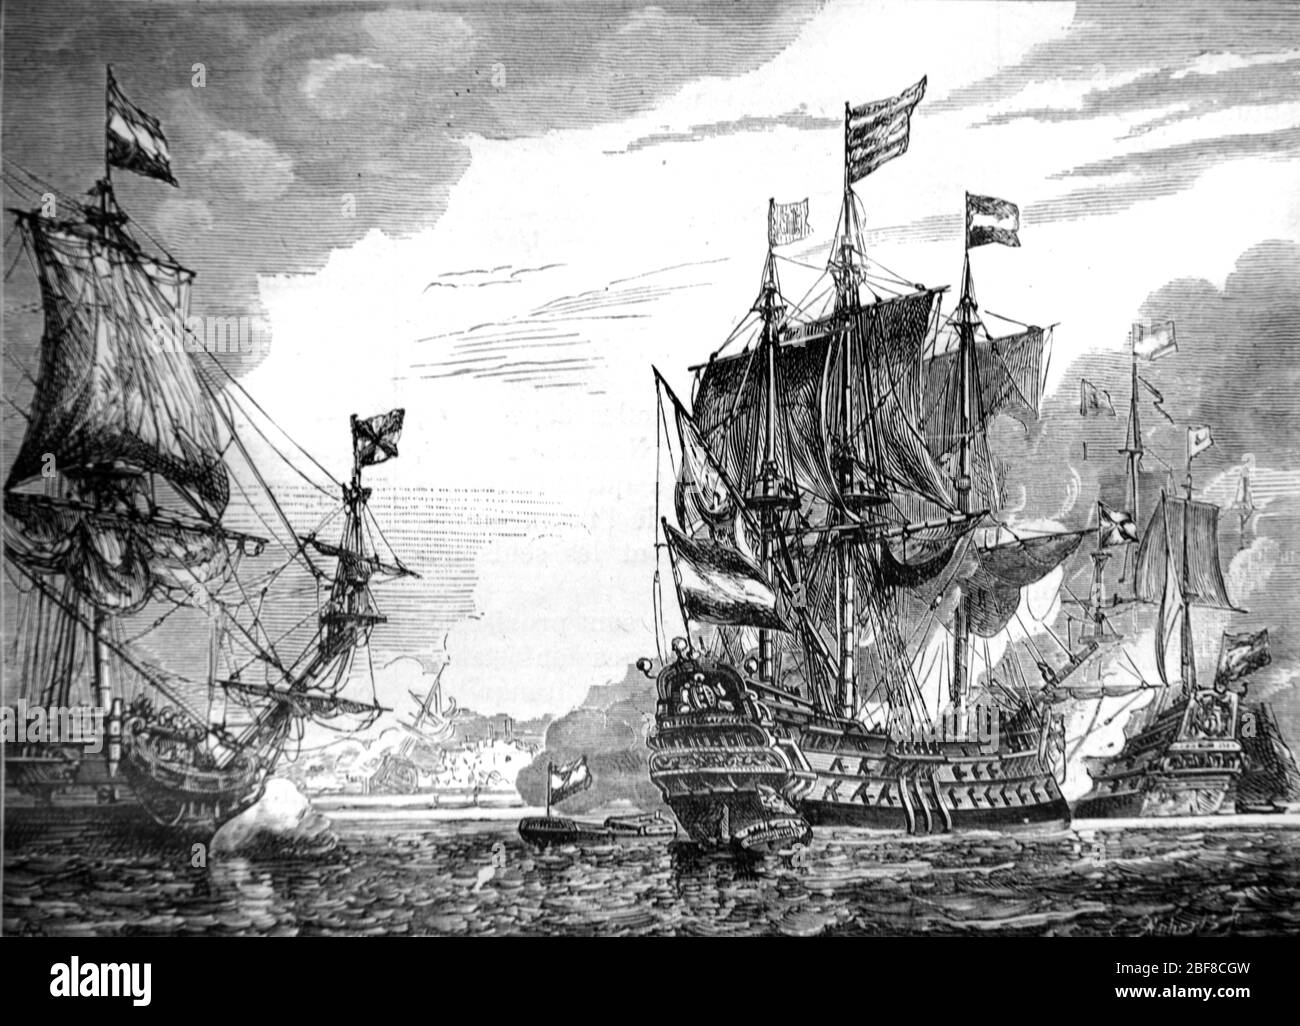 Bataille navale espagnole Armada contre la Marine royale britannique ou la flotte anglaise dans la Manche. L'Armada a corisqué 130 navires espagnols, qui font partie de la guerre anglo-espagnole (1585-1604) et de la guerre des années quatre-vingt. Vintage ou ancienne illustration ou gravure 1888 Banque D'Images